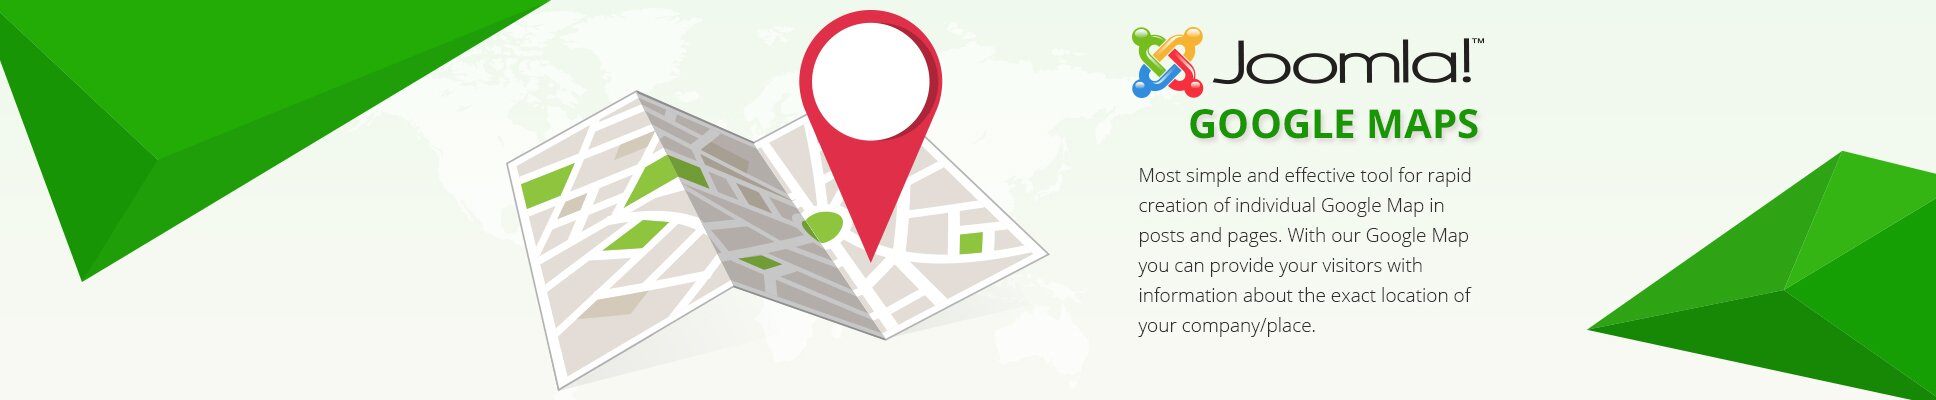 Joomla Google Maps FAQ